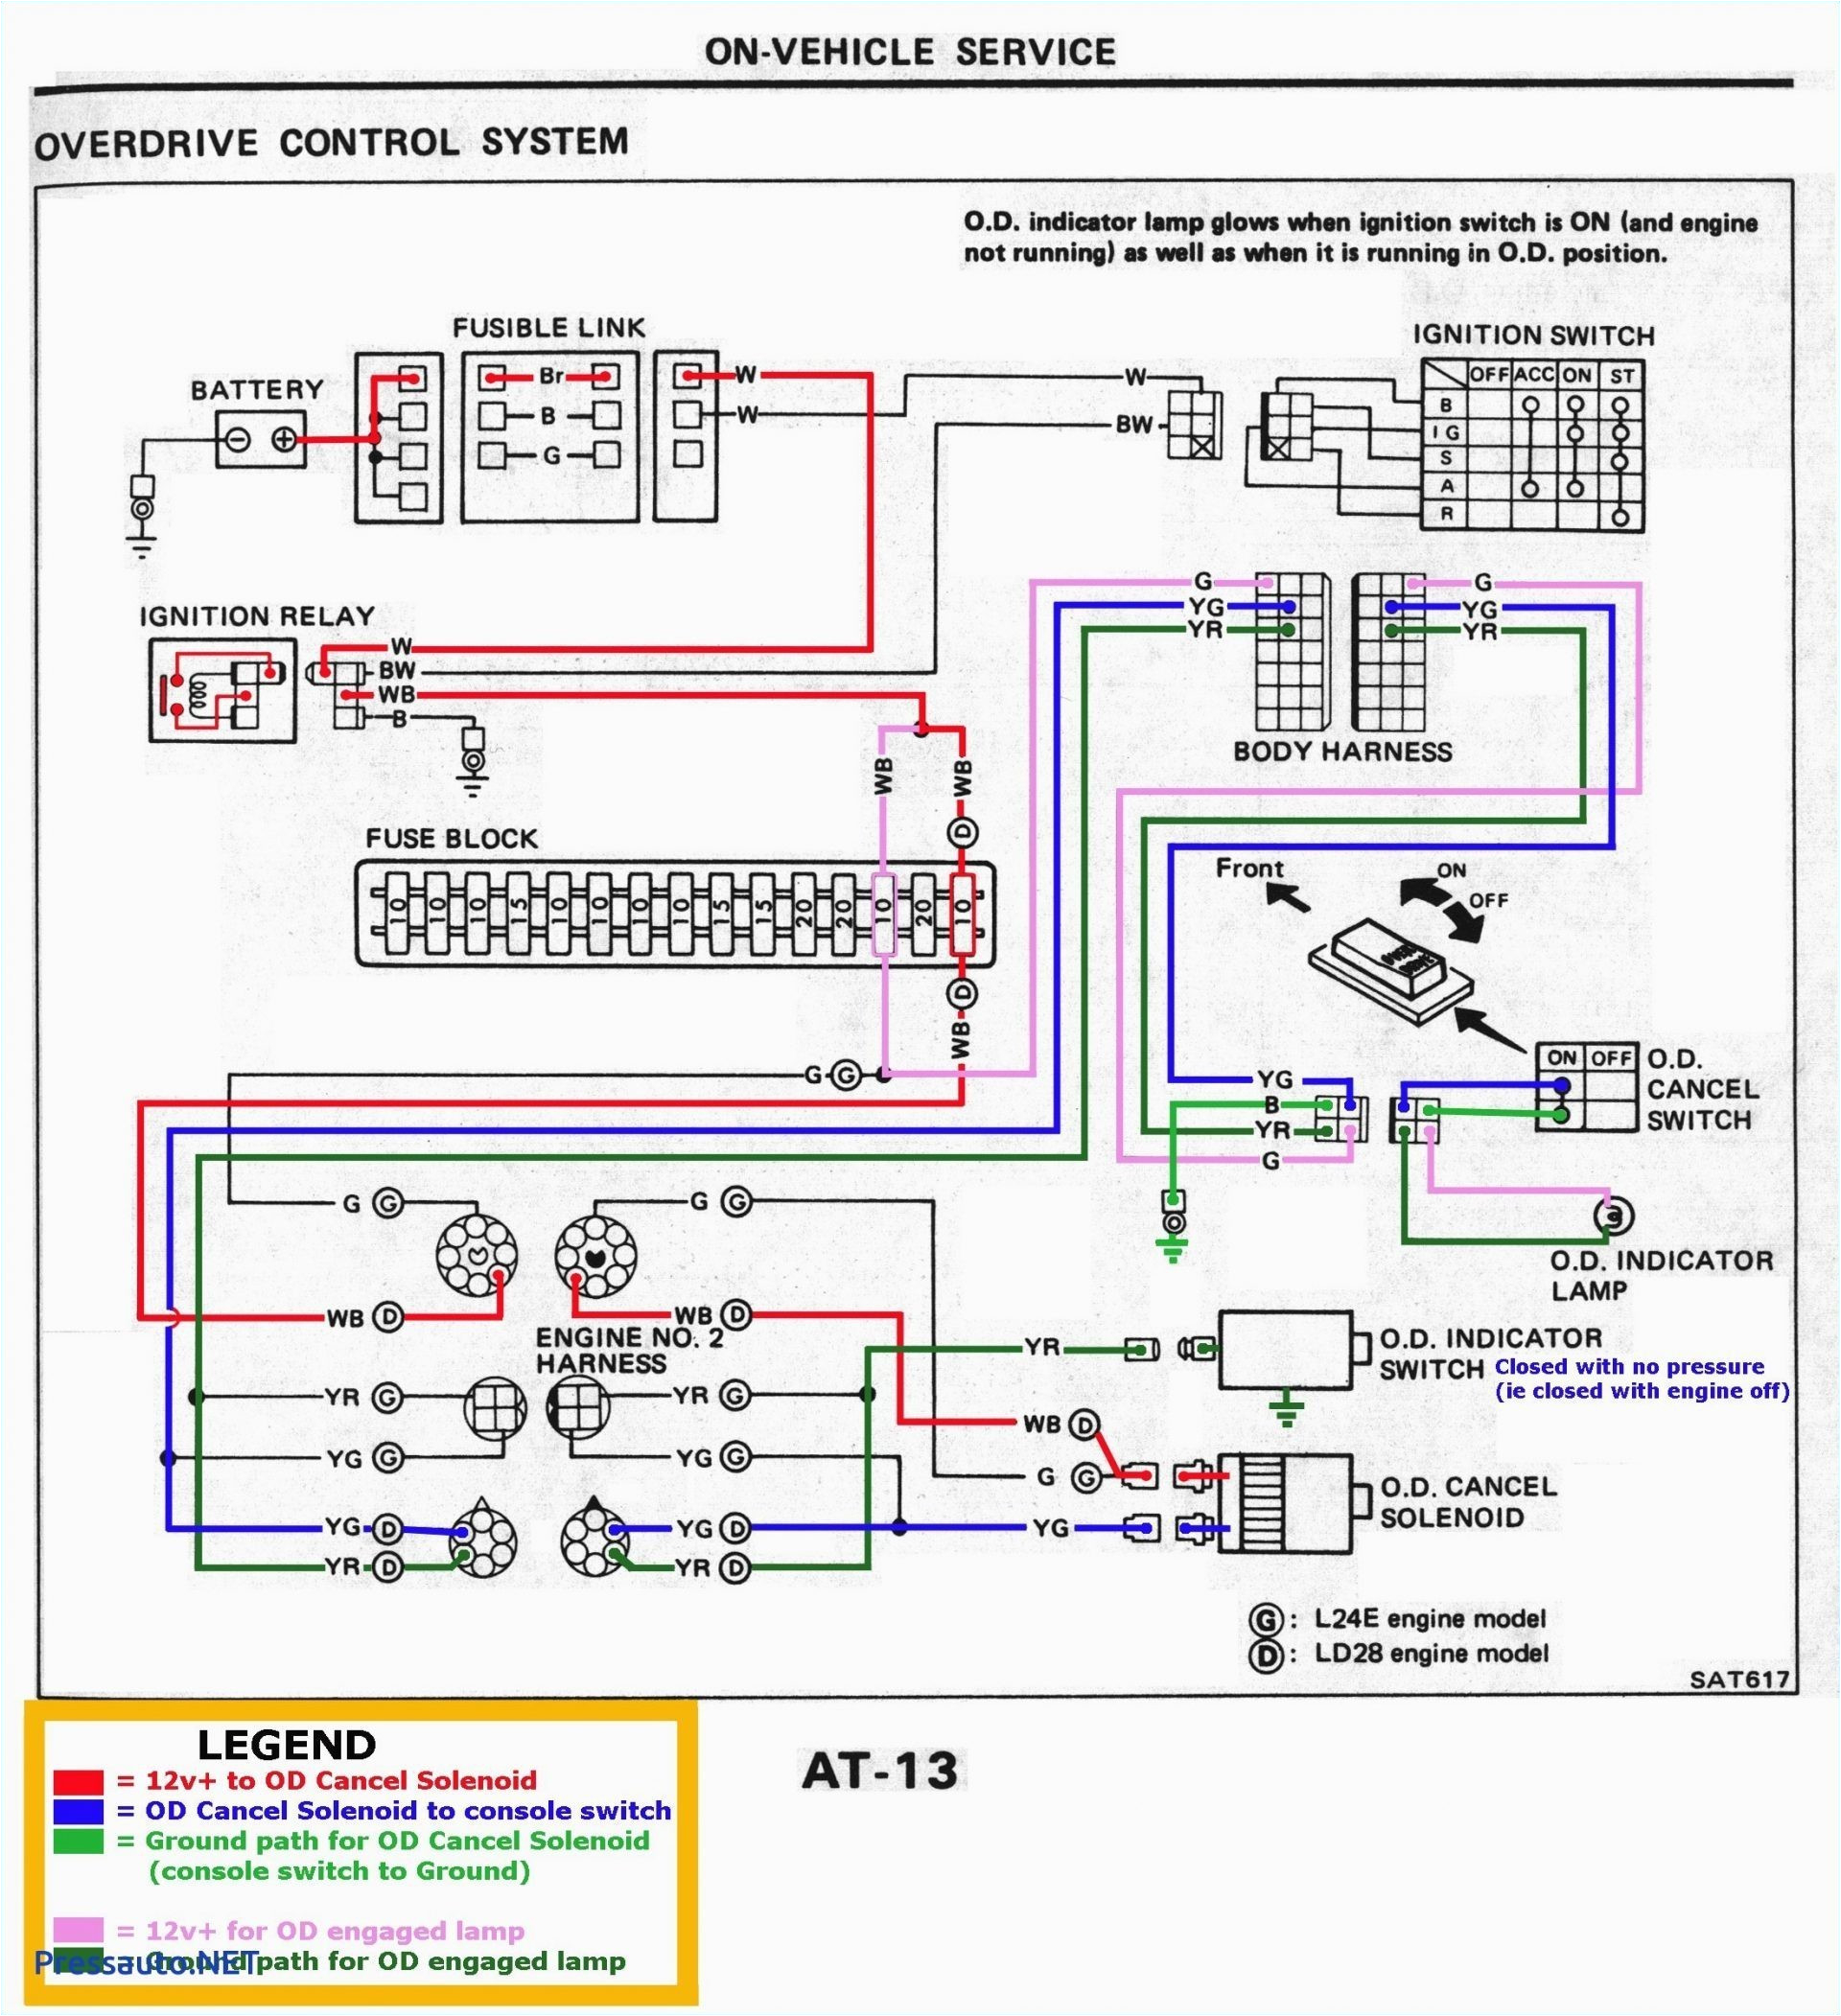 light switch dodge neon schematic wiring diagram files light switch dodge neon schematic